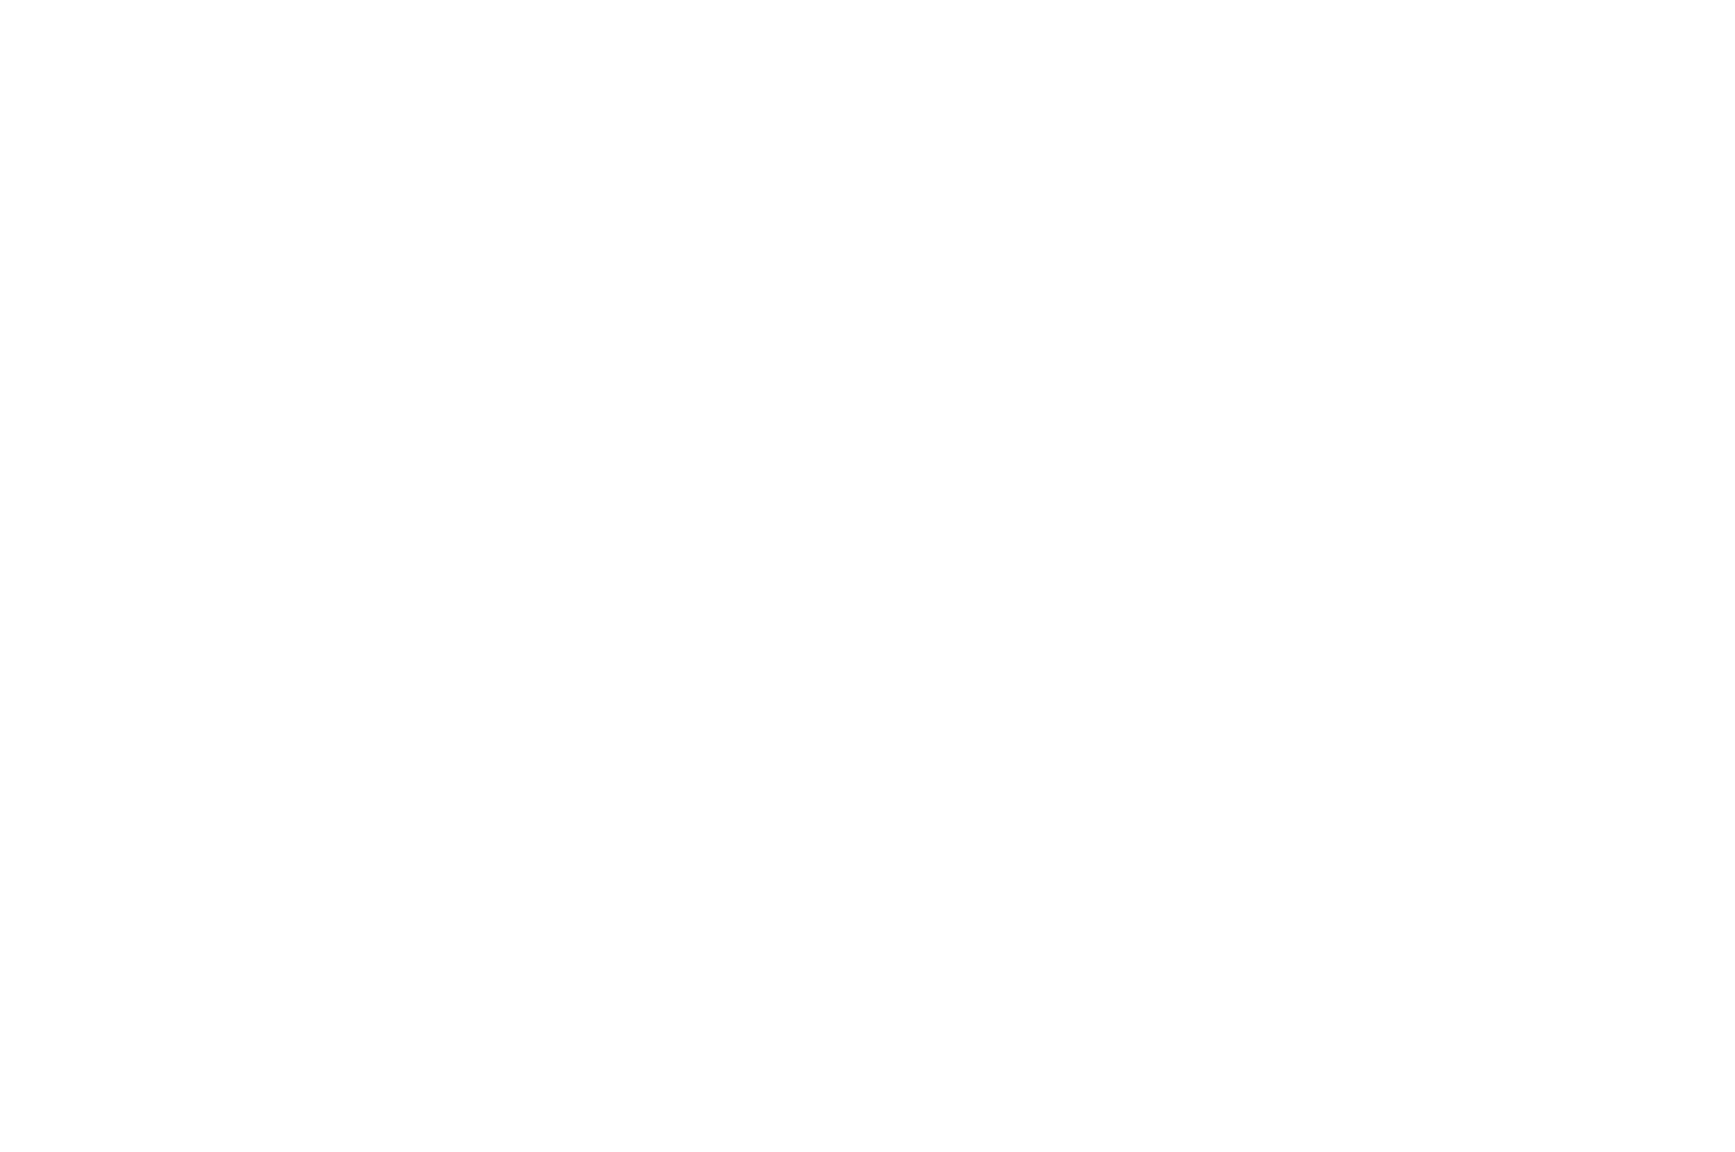 BEST TRAILER - International Christian Film Music Festival - 2020